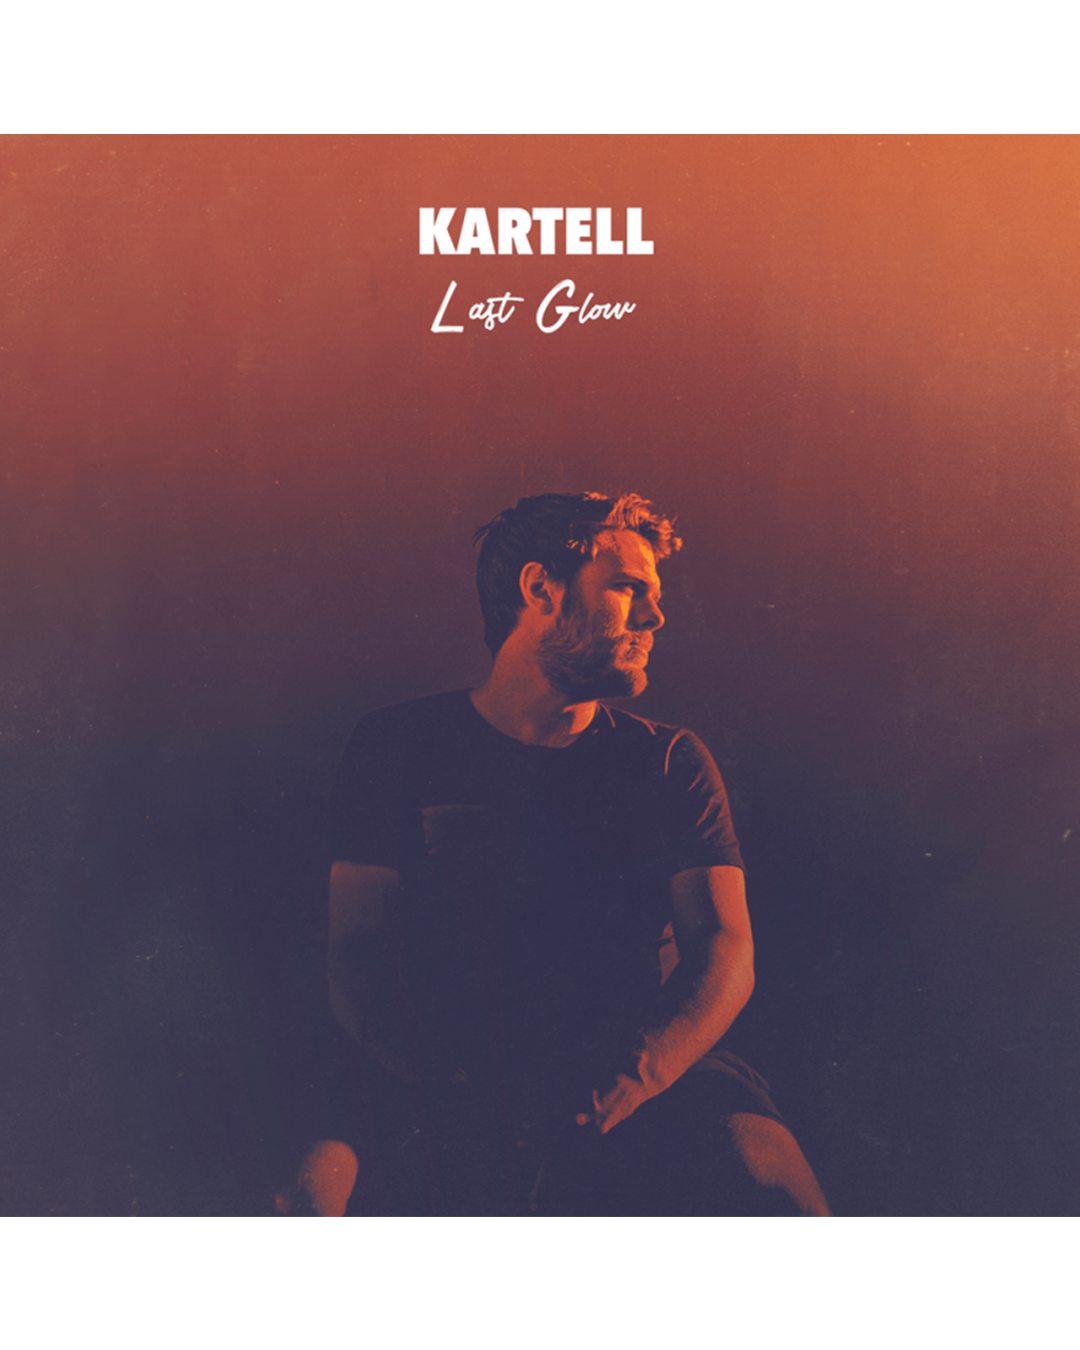 KARTELL – LAST GLOW – VINYL 12″ EP